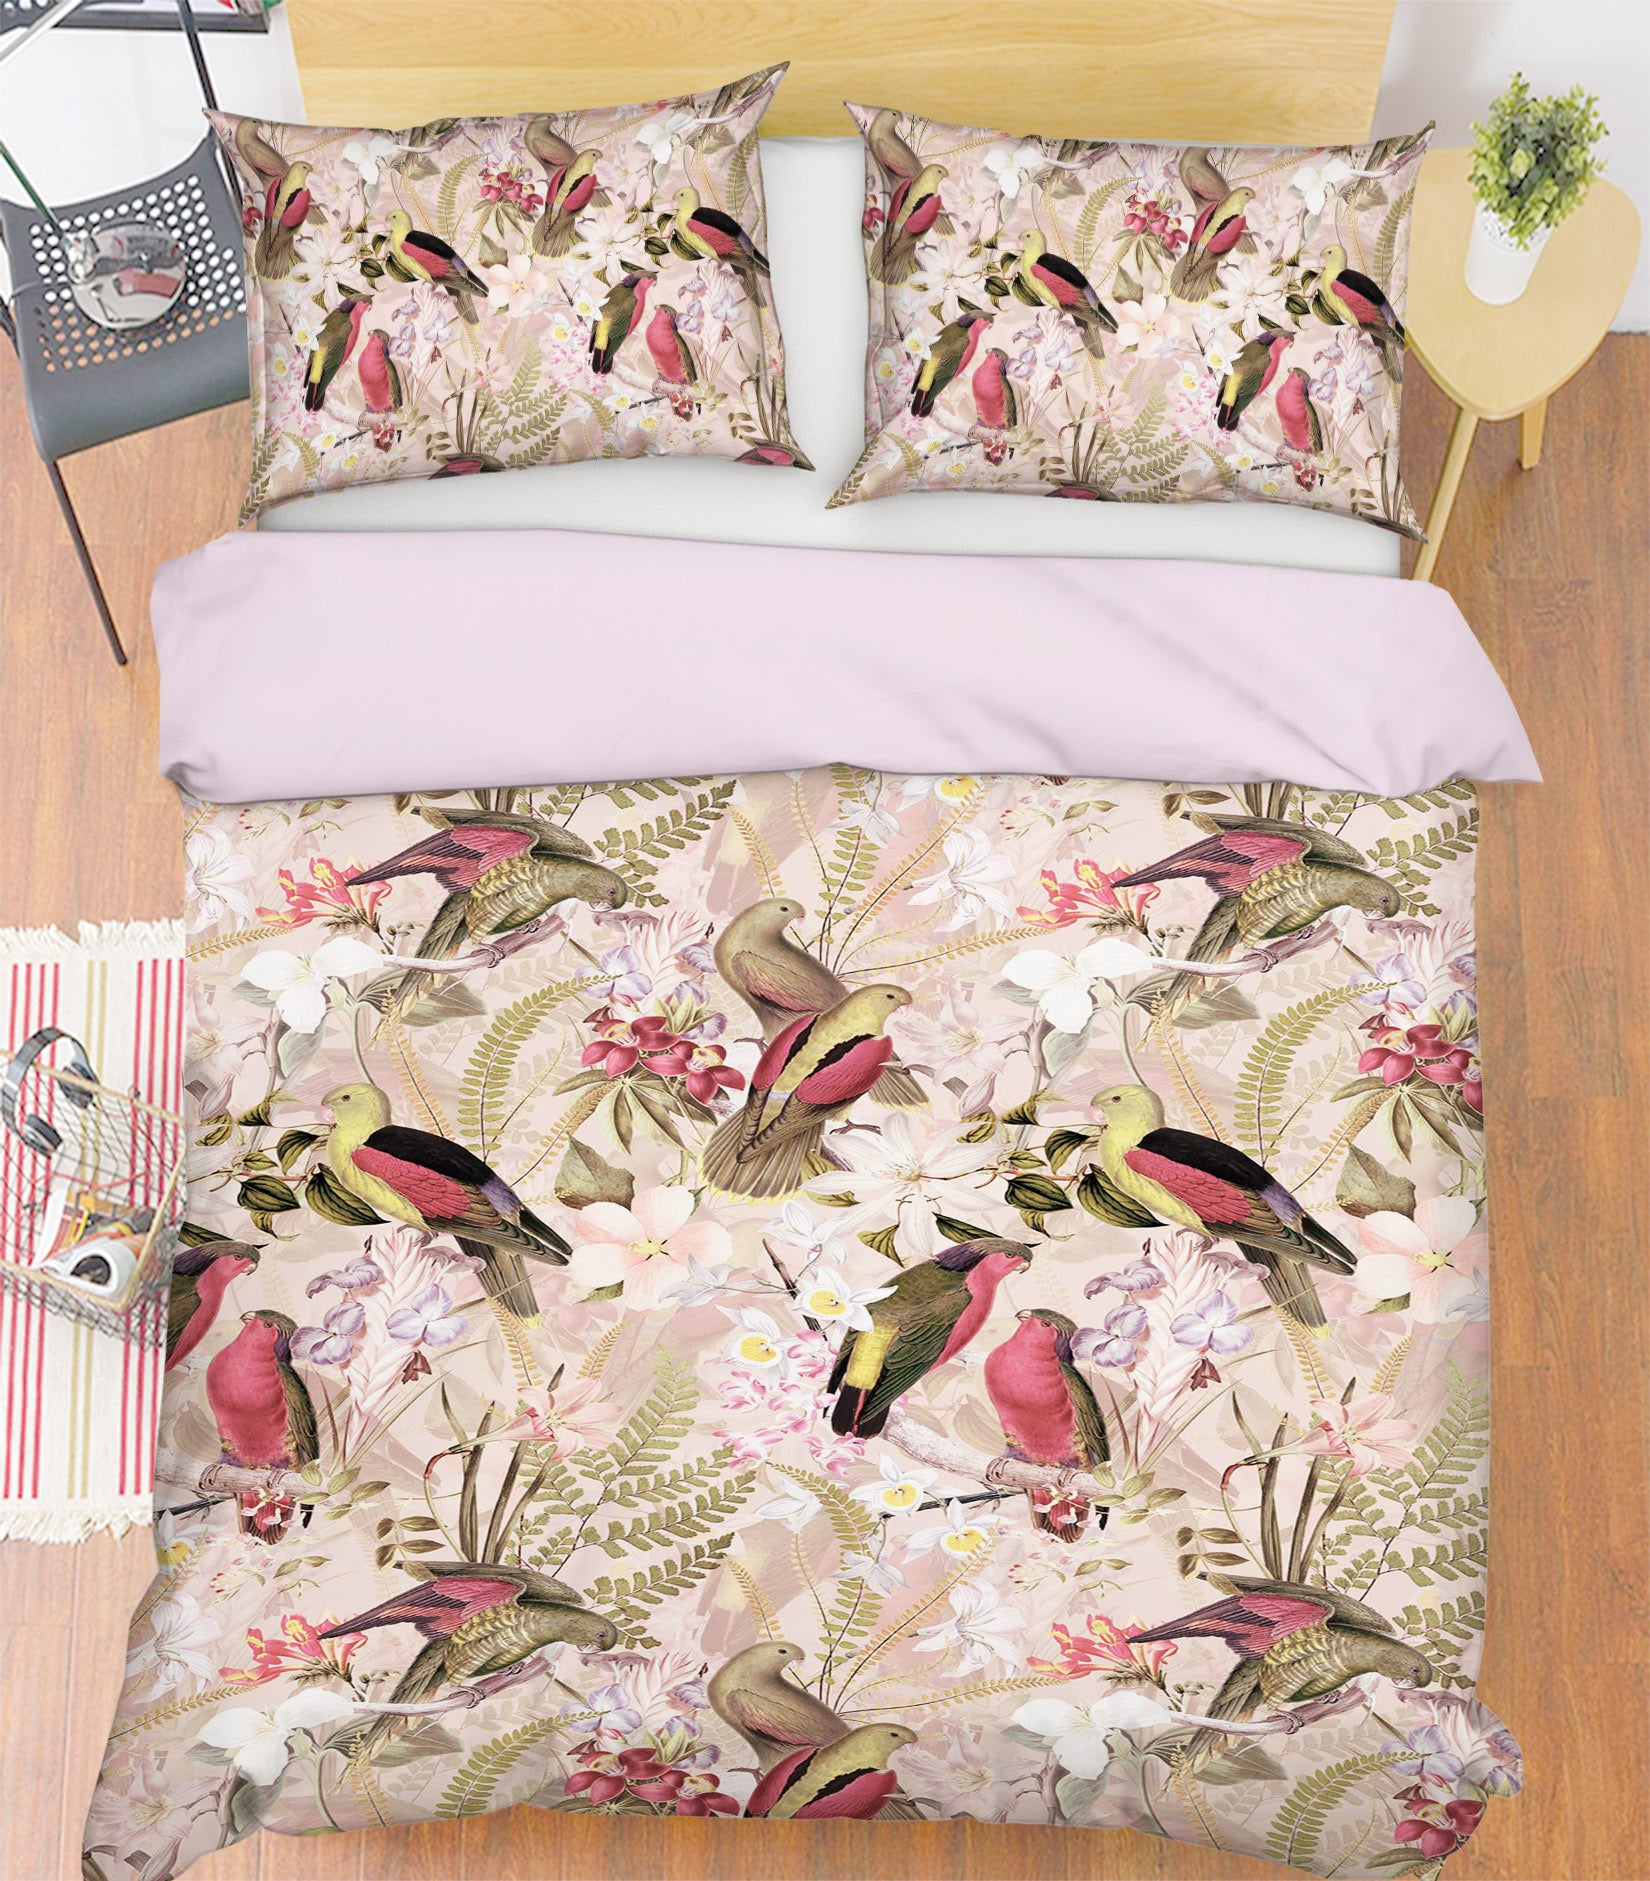 3D Parrot Flower 101 Uta Naumann Bedding Bed Pillowcases Quilt